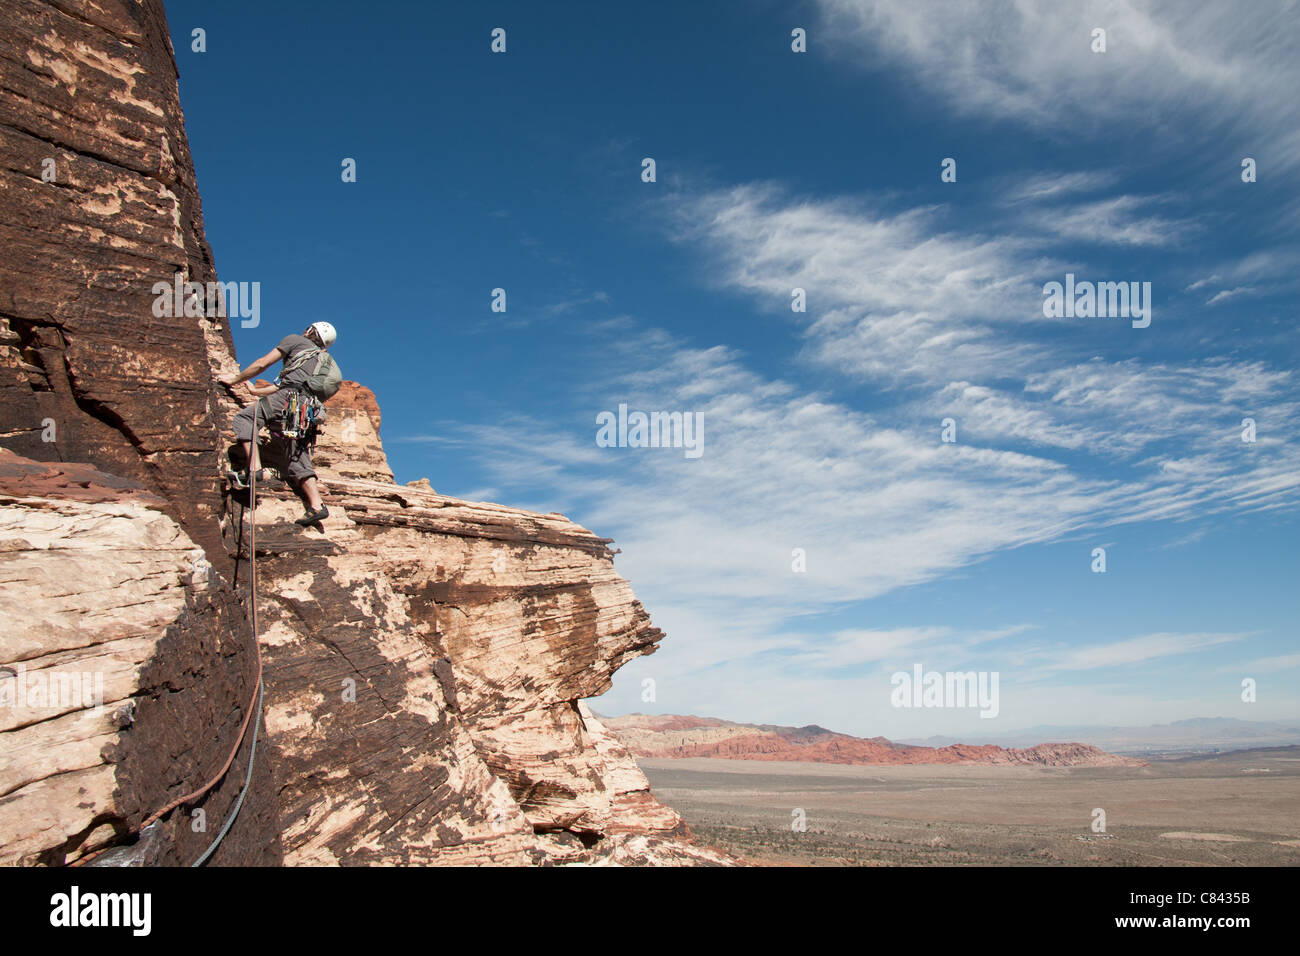 Un escalador es ascendente algunos grandes rocas areniscas de color rojo, cerca de las vegas, en Nevada. Foto de stock